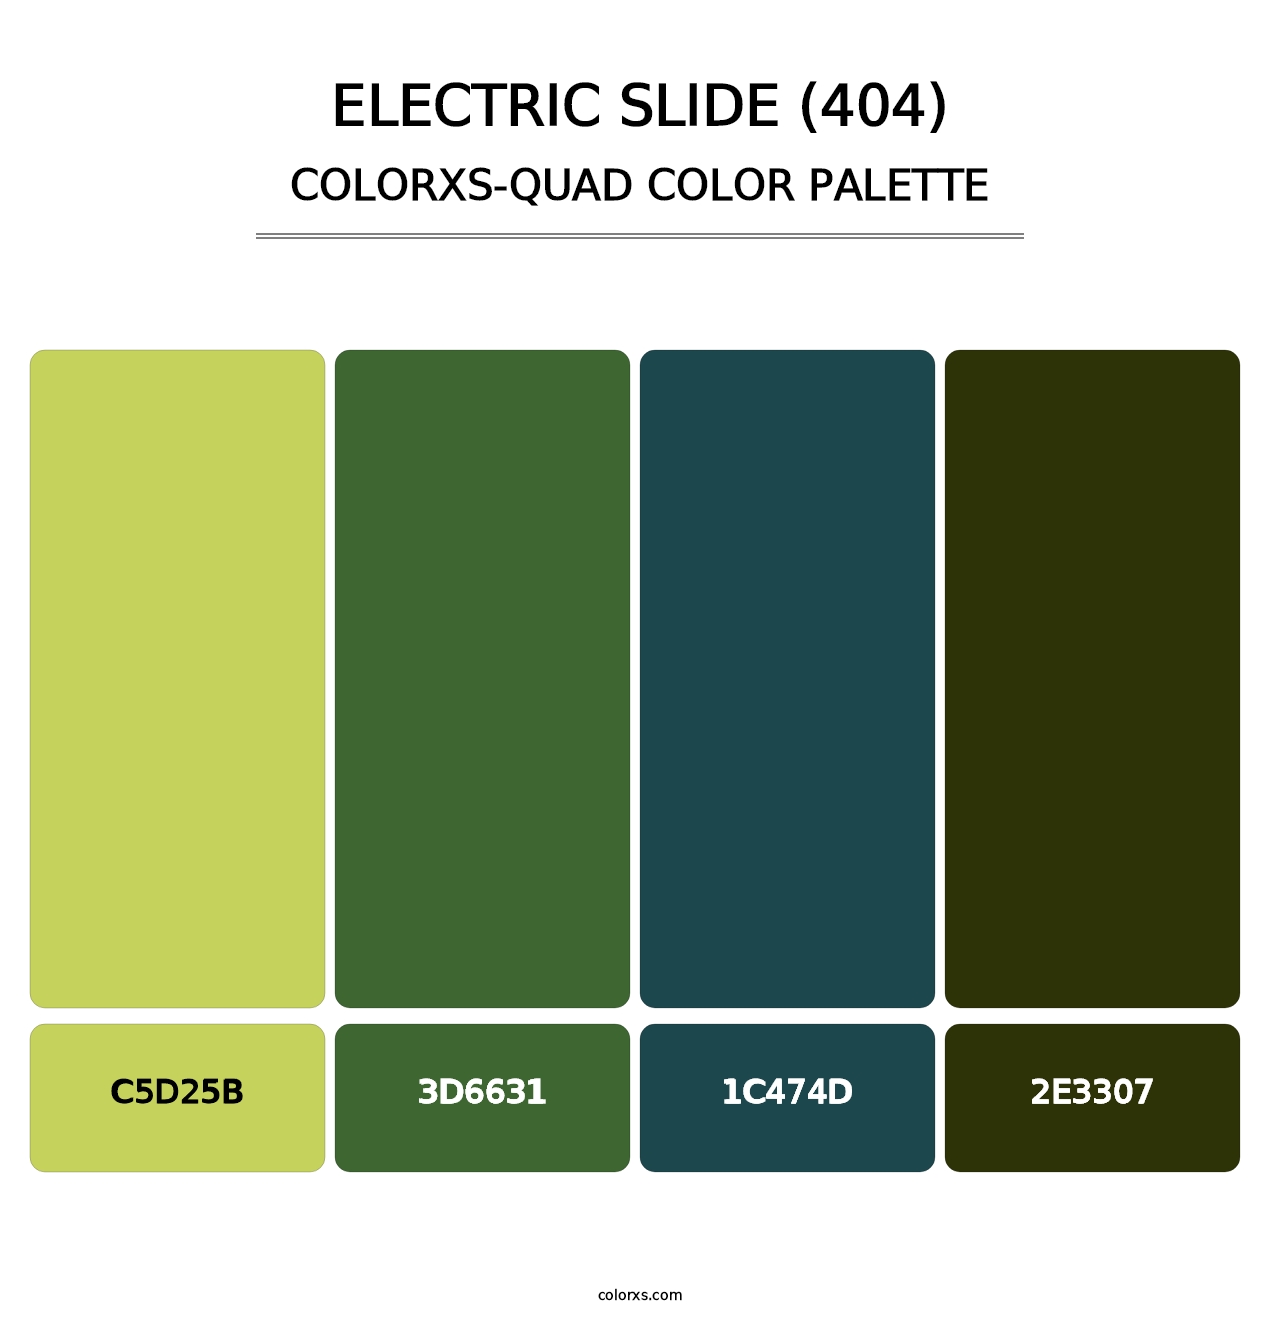 Electric Slide (404) - Colorxs Quad Palette